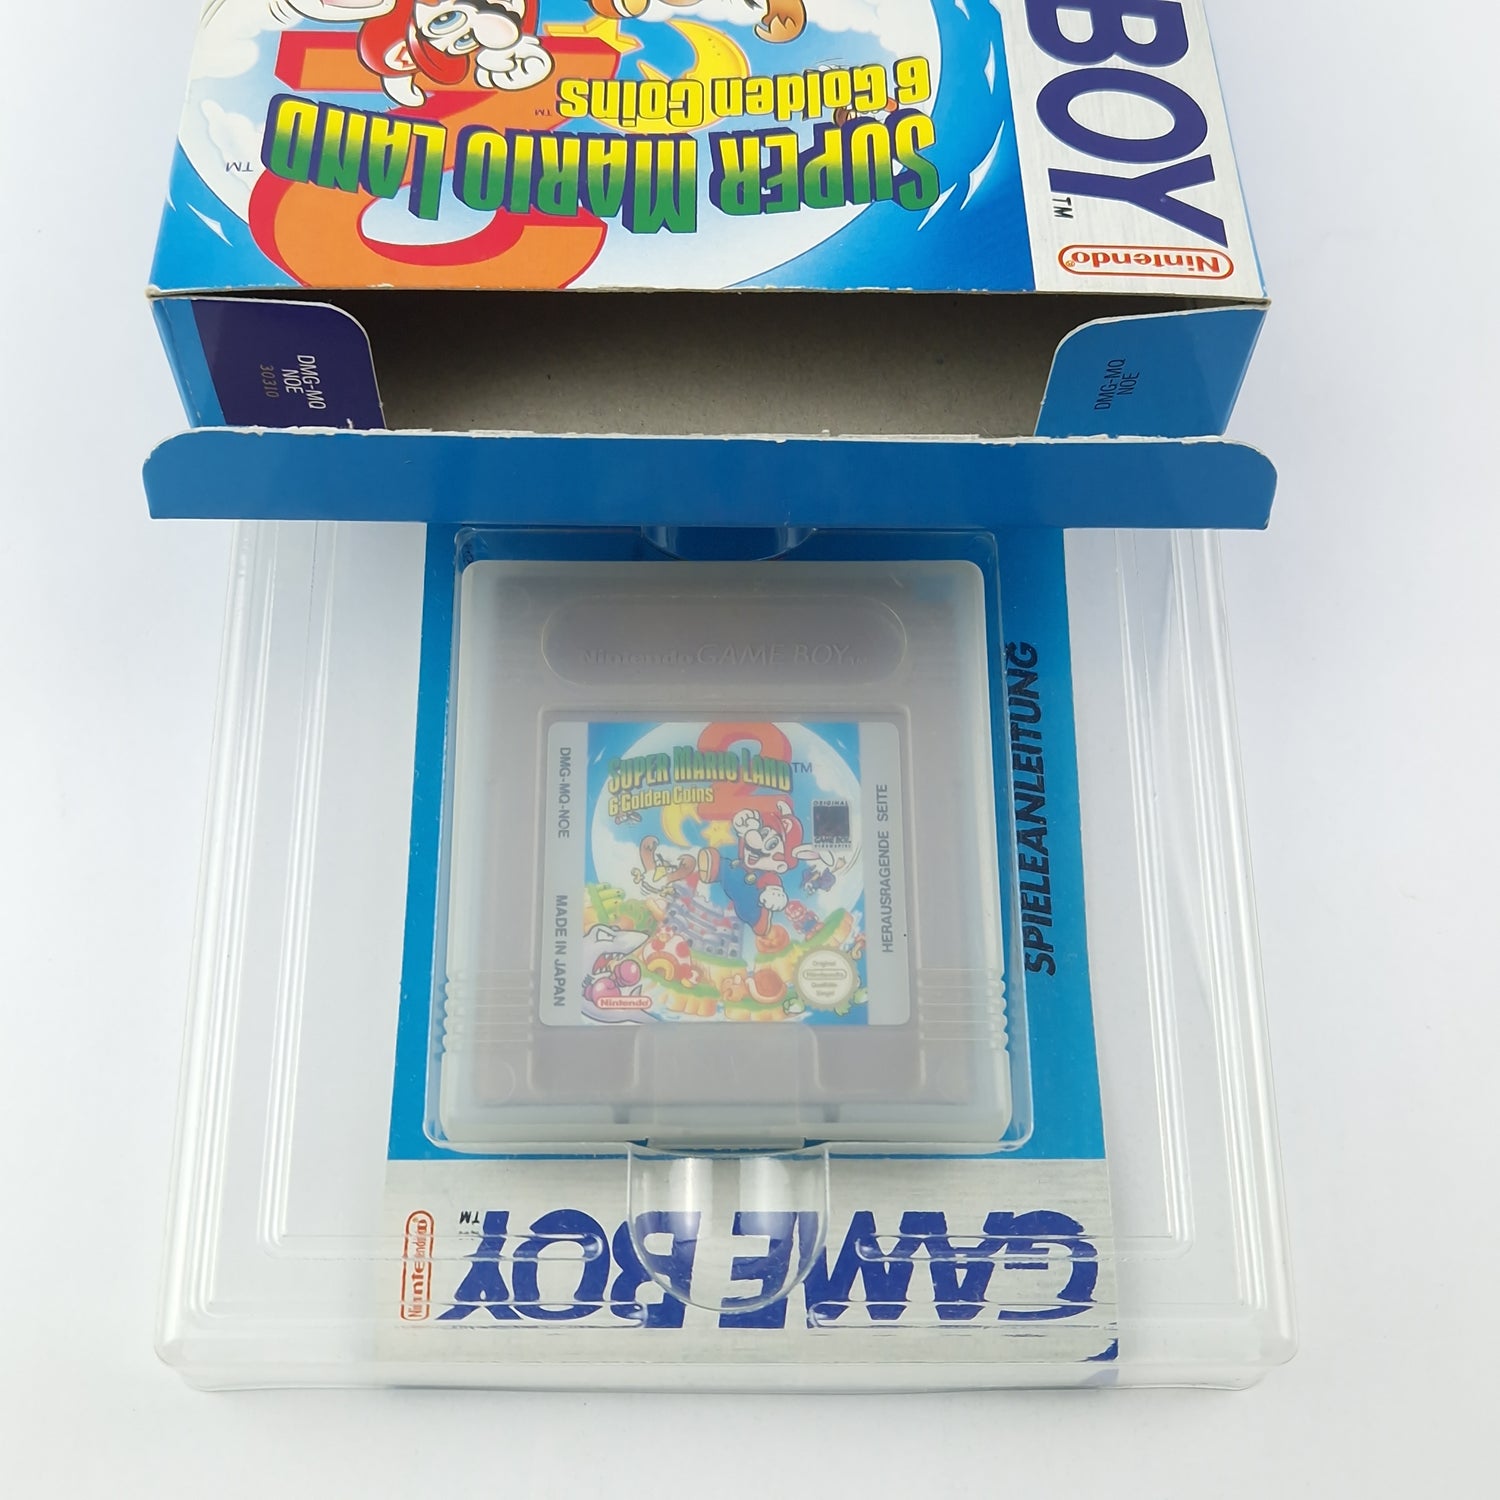 Nintendo Game Boy Classic Game: Super Mario Land 2 6 Golden Coins GAMEBOY OVP